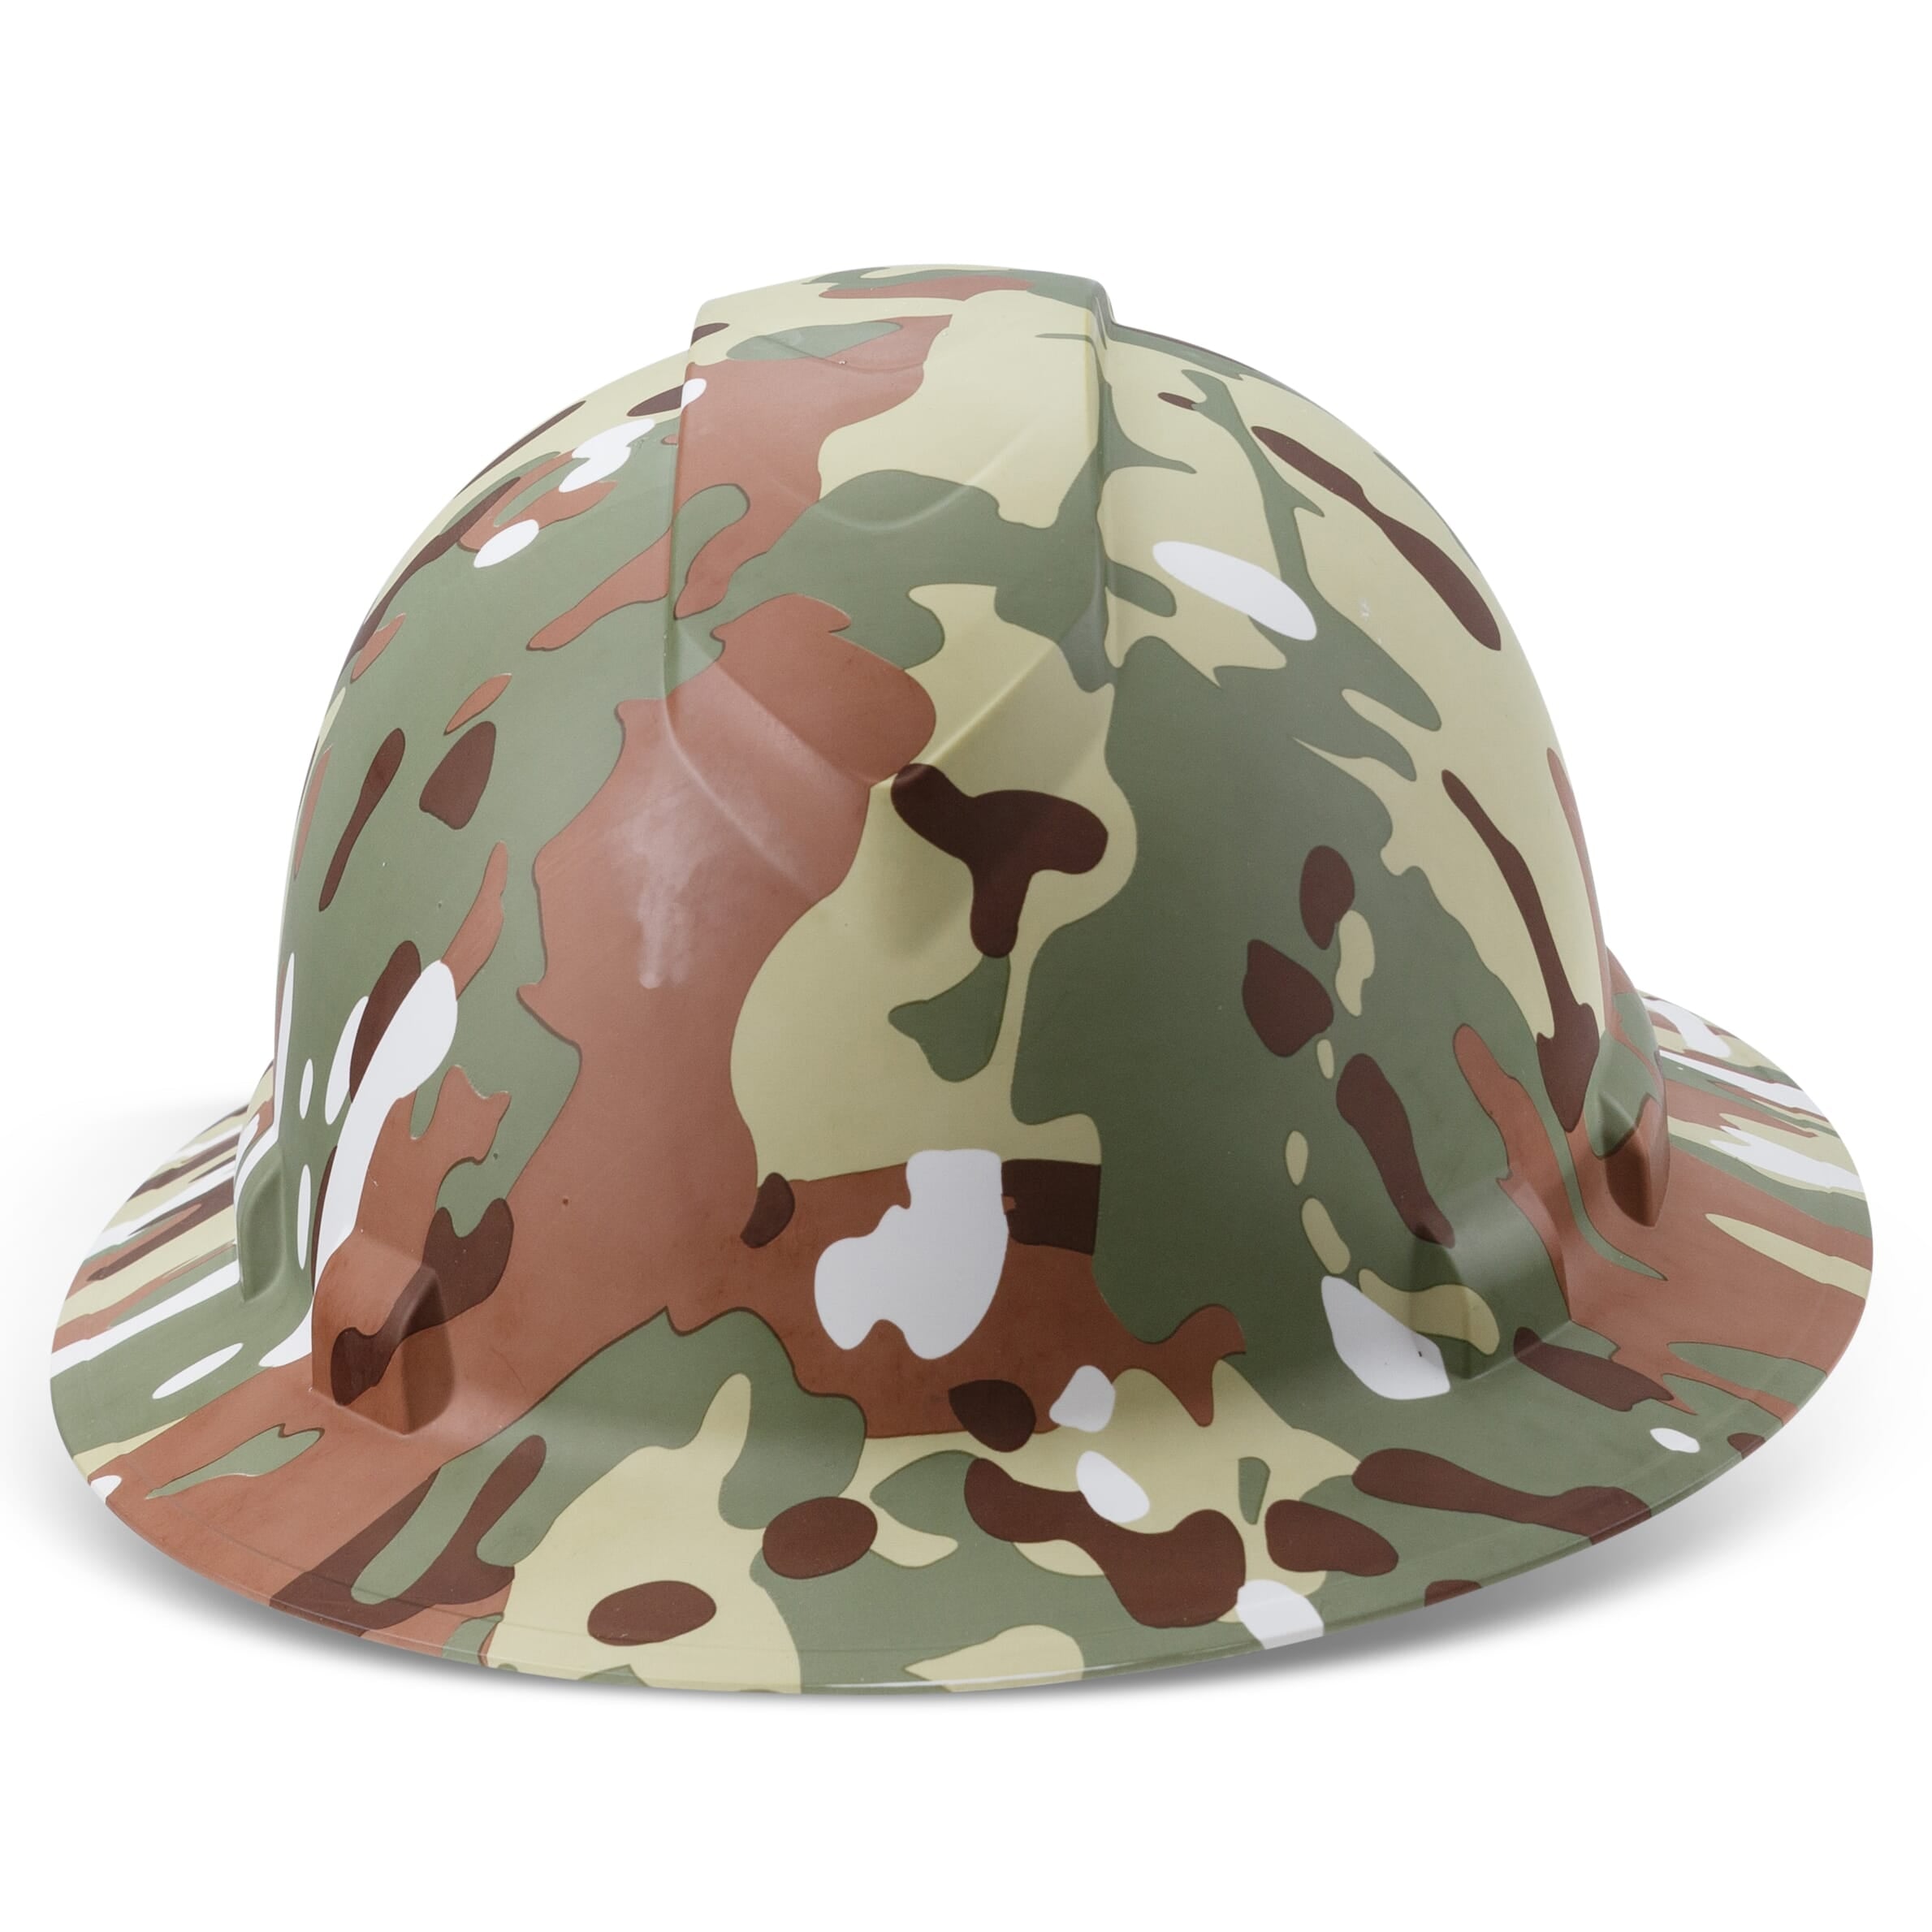 Full Brim Pyramex Hard Hat, Custom Army Camo Design, Safety Helmet, 6 Point